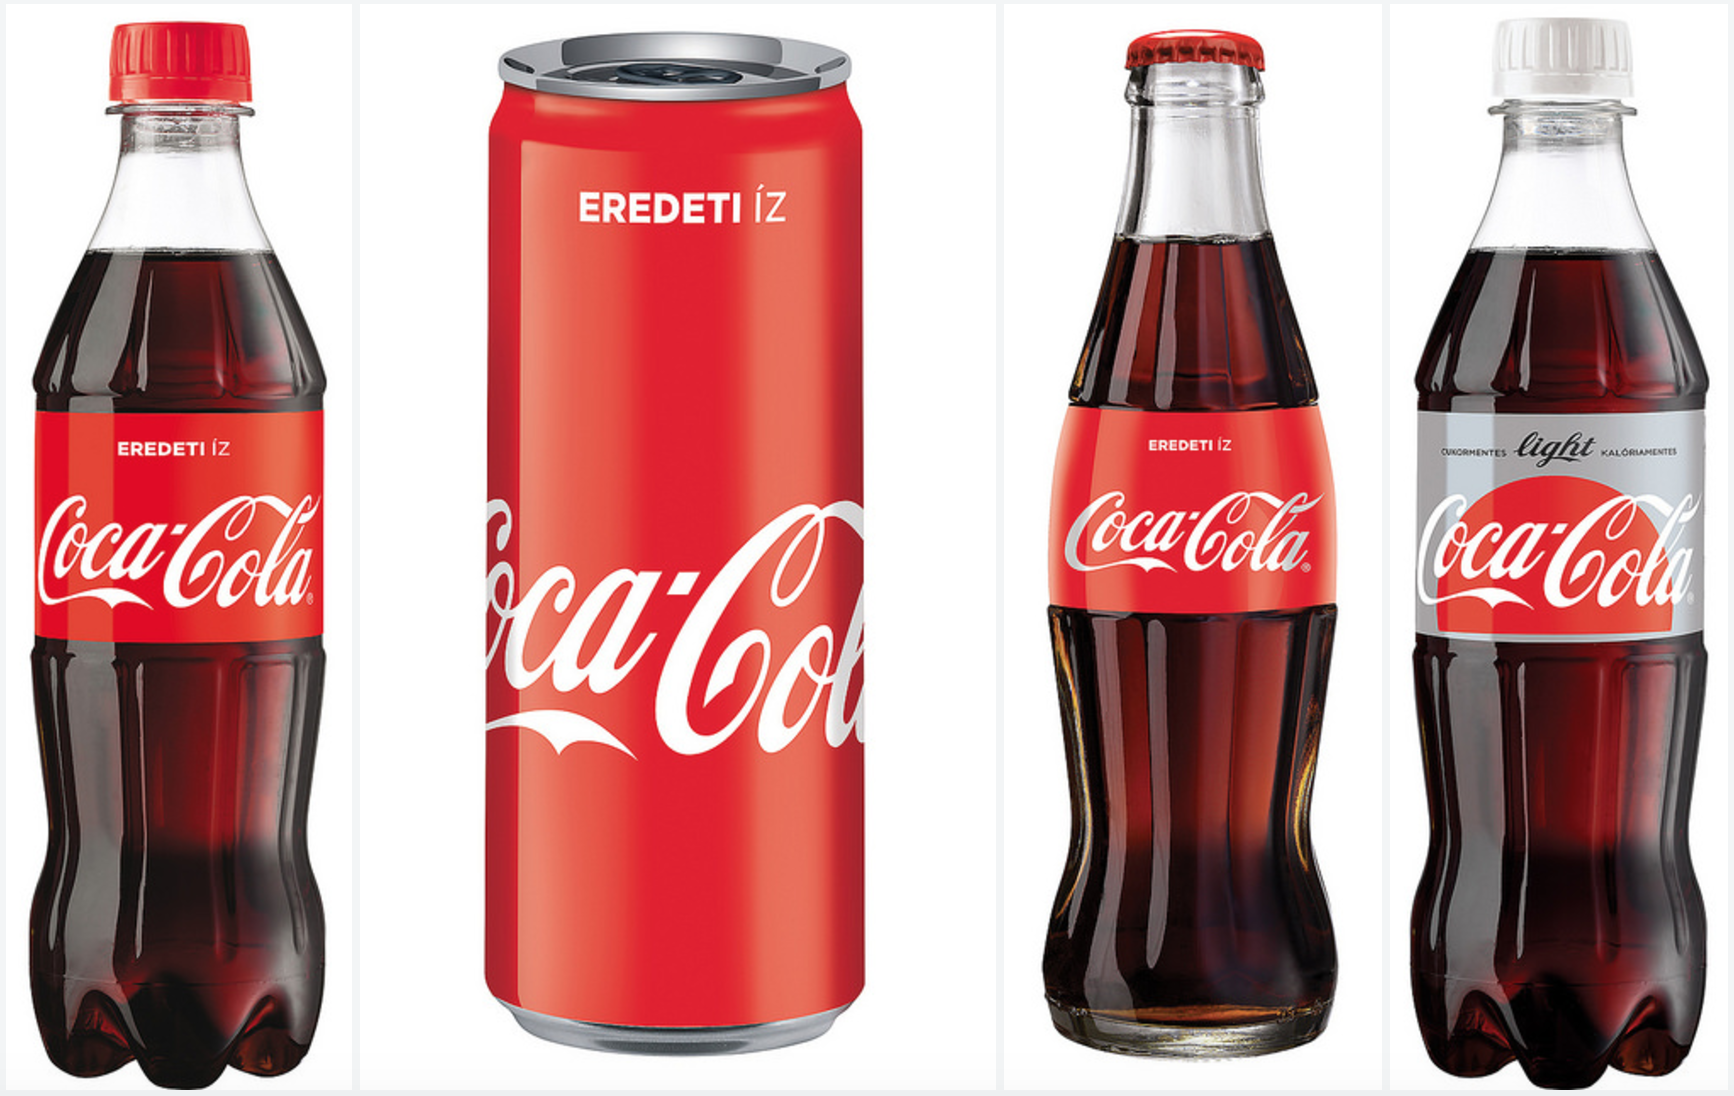 Új designt kaptak a magyar Coca-Cola üdítők